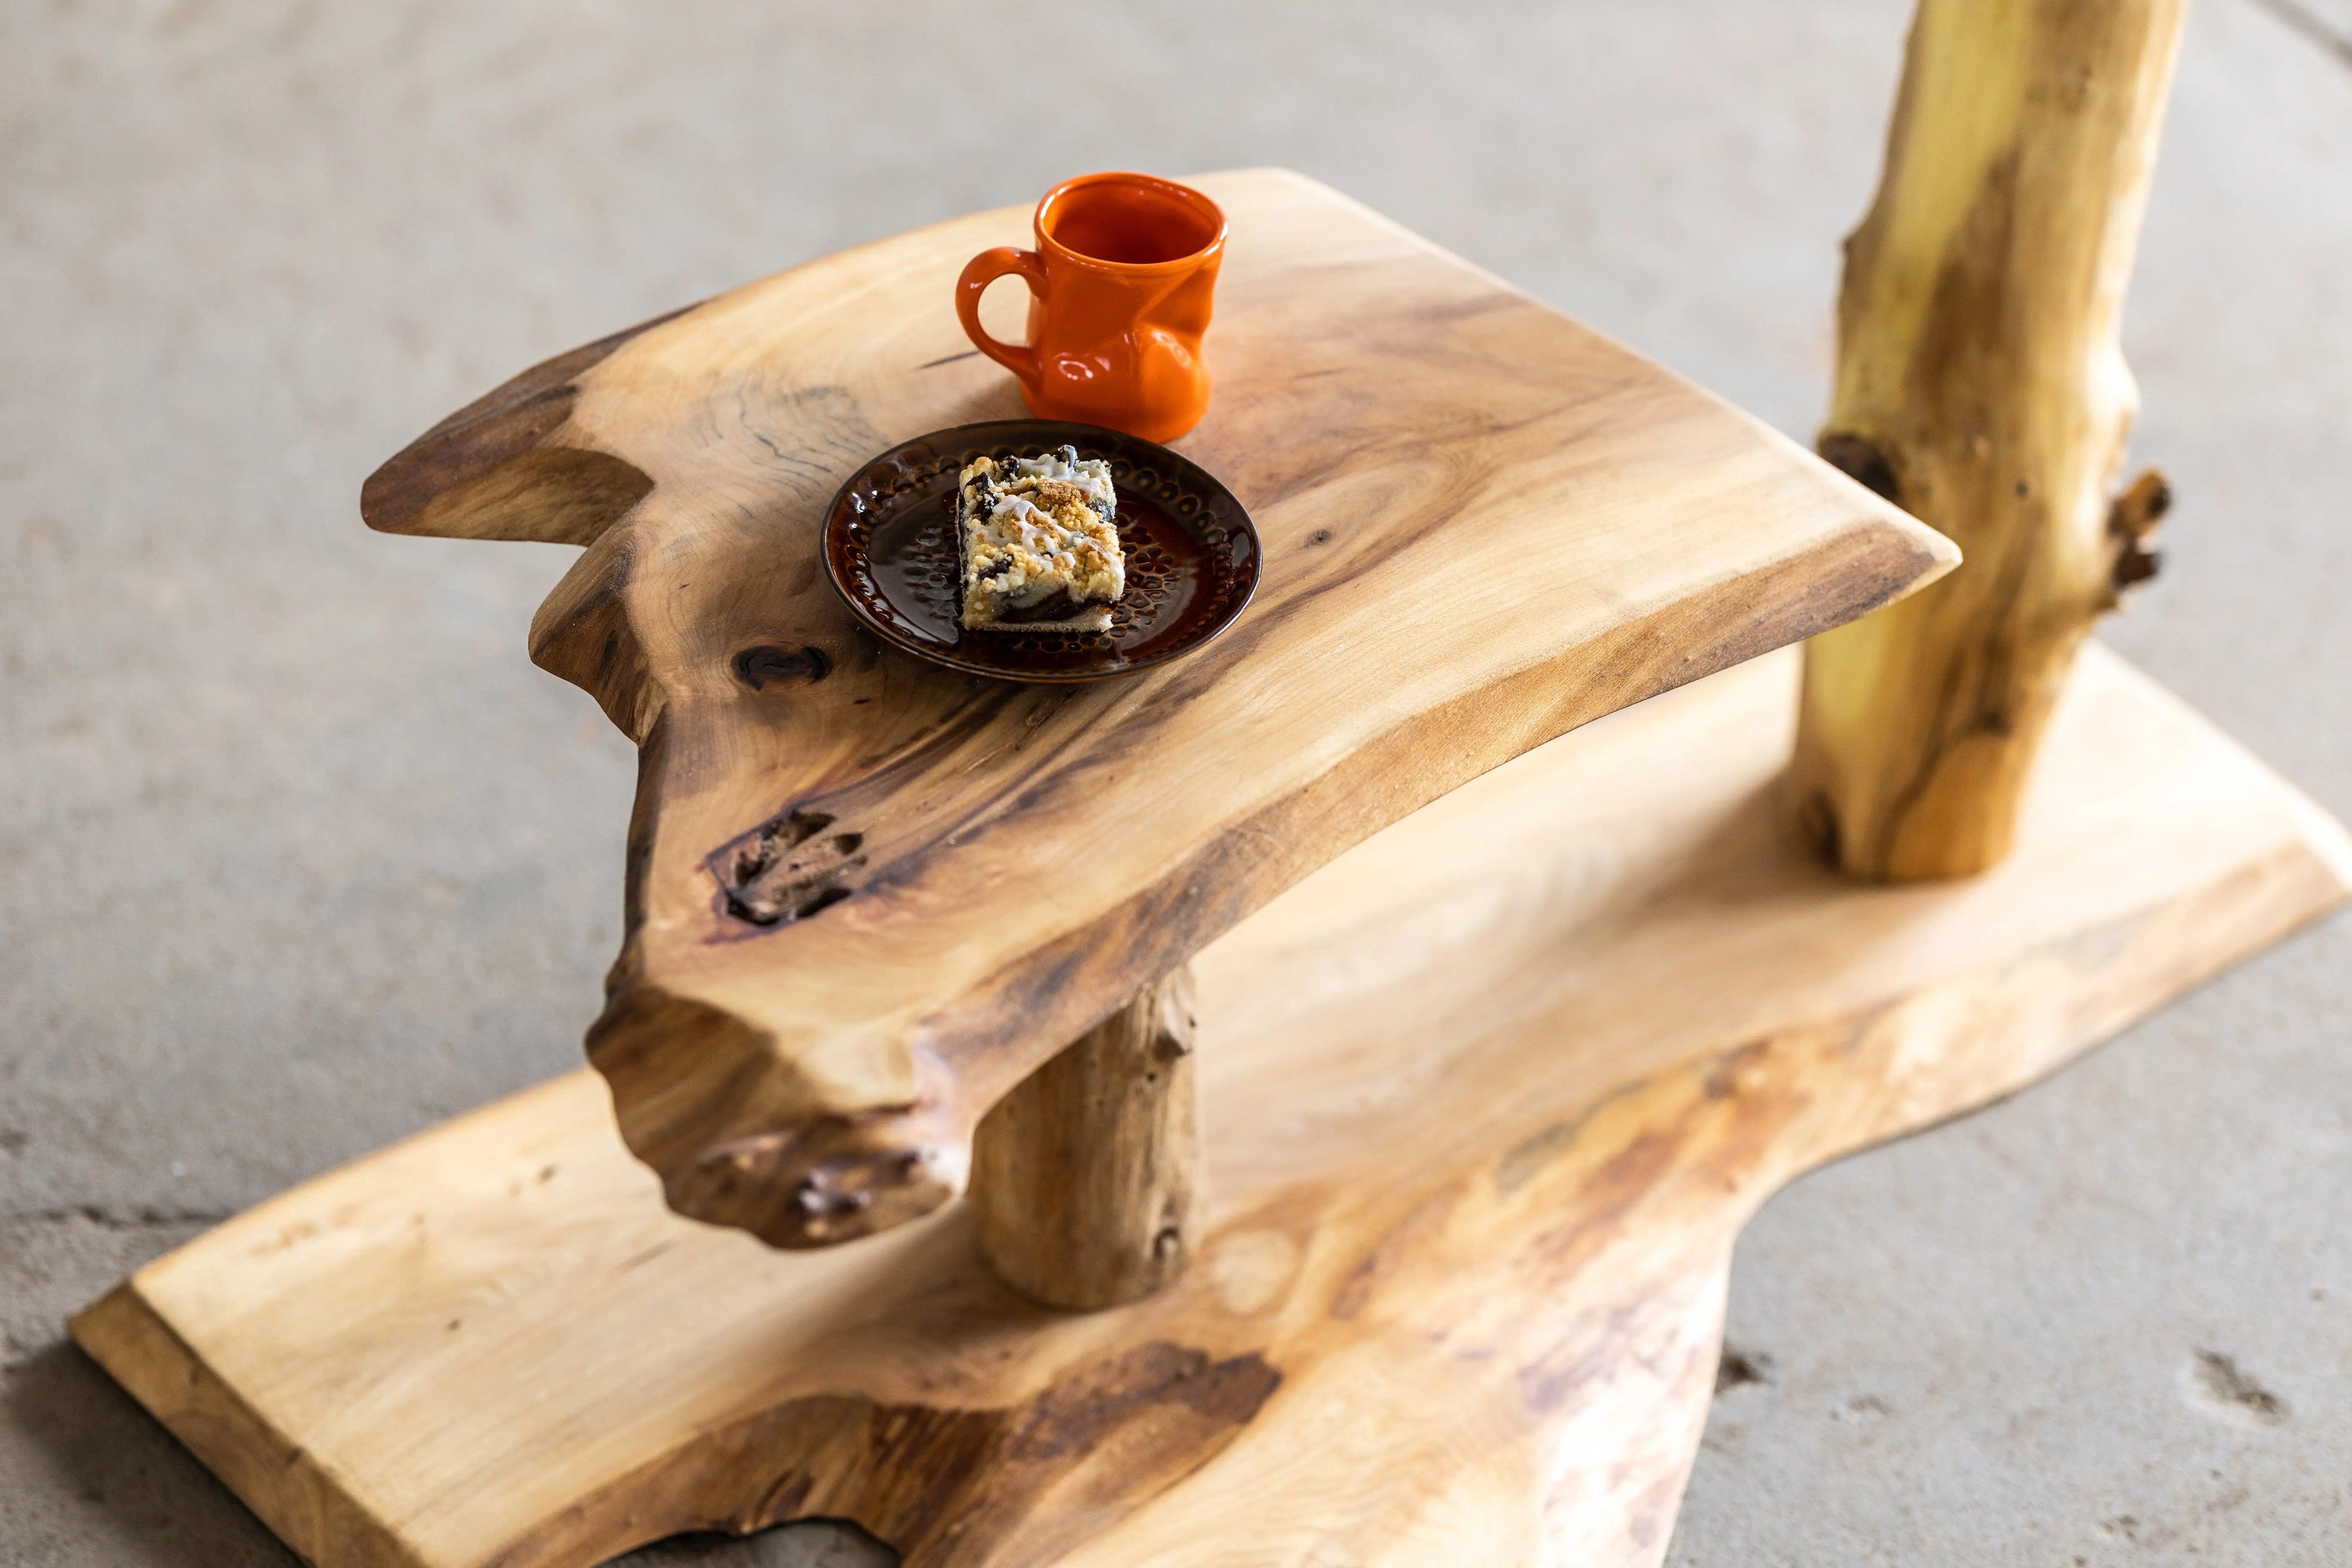 Leselampe mit Tisch "Fokus|Spannung" Baumzeit Design